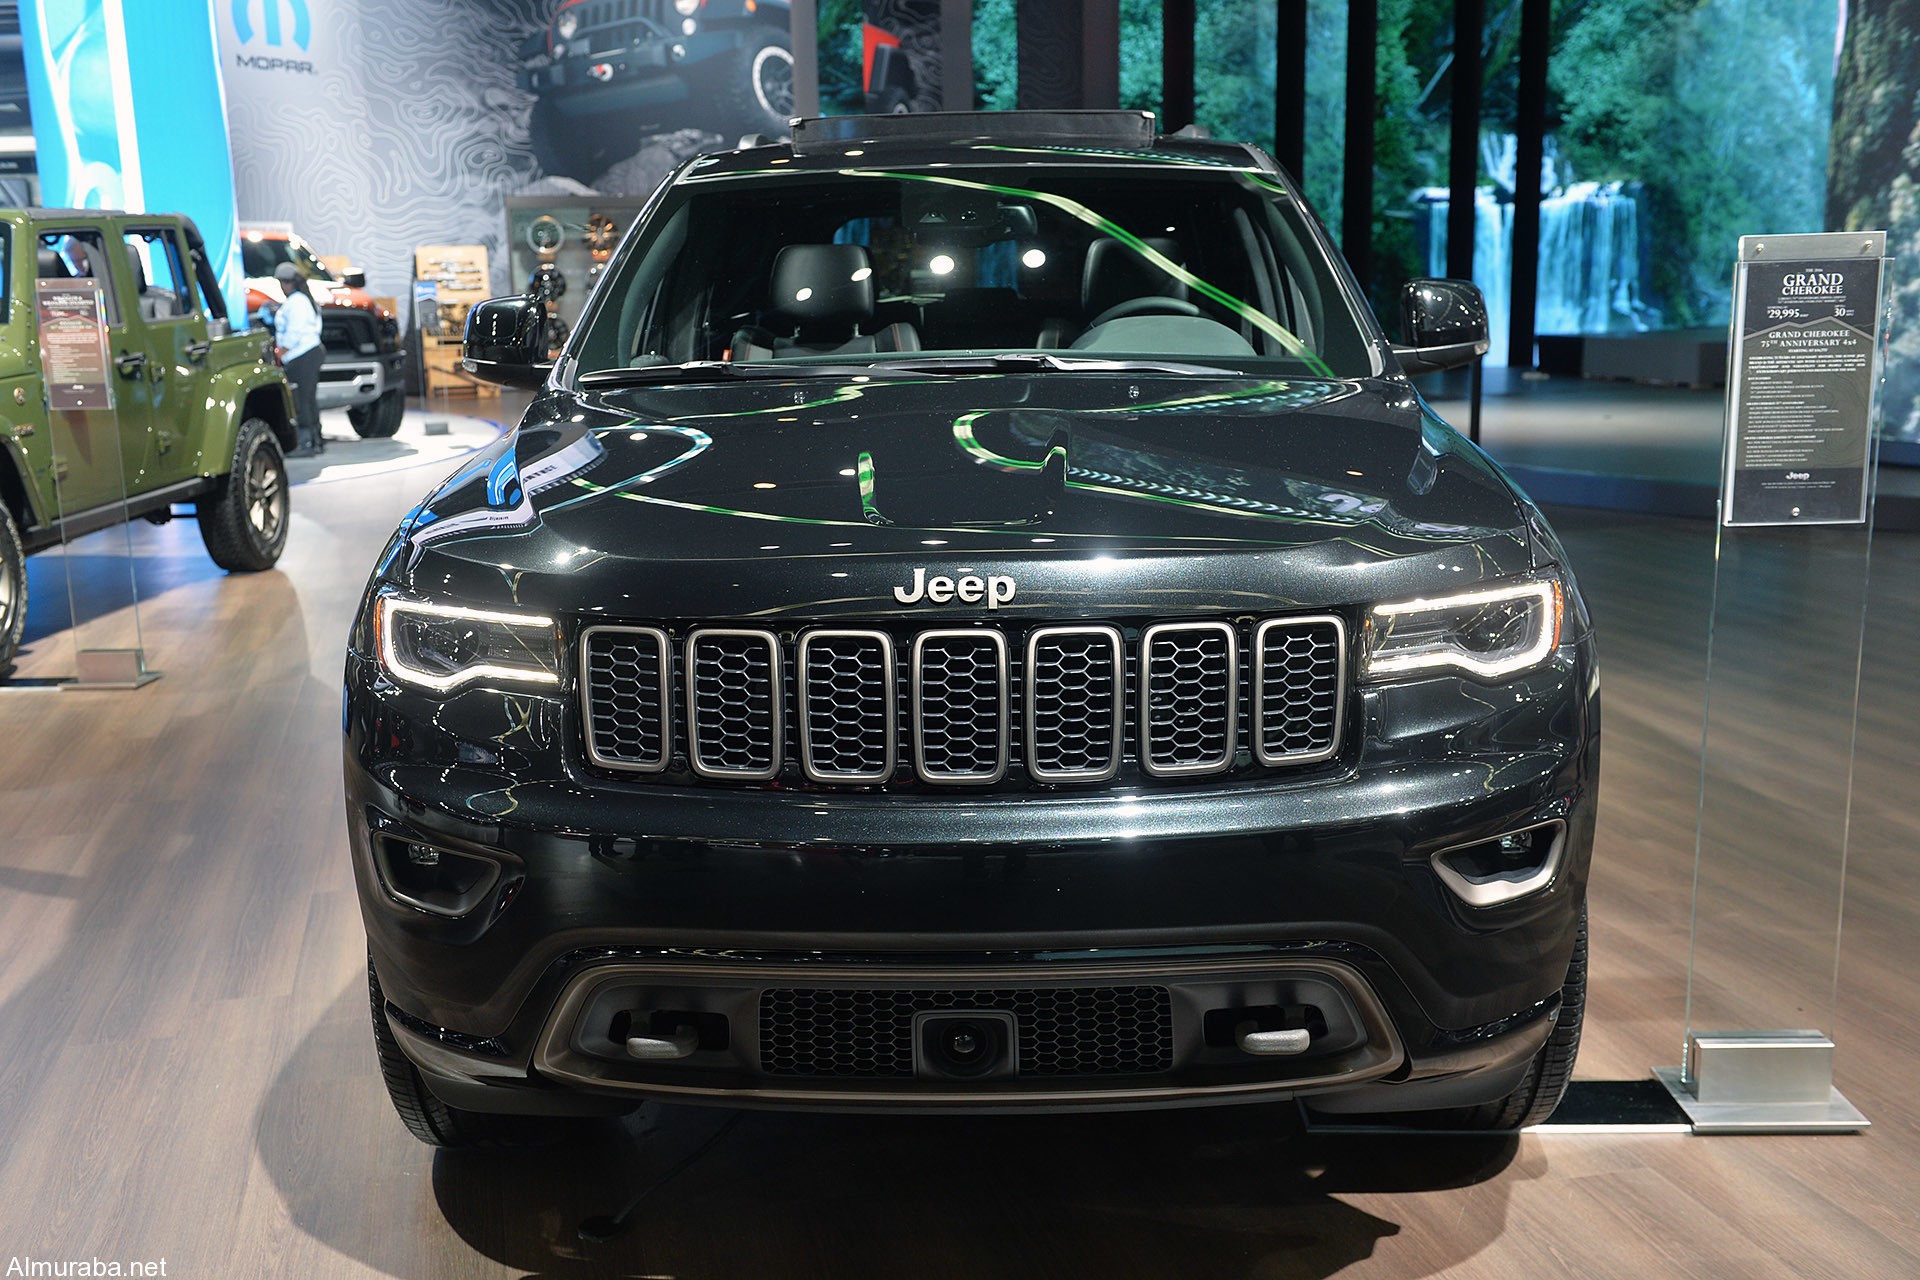 “جيب” تحتفل بالذكرى 75 لتأسيسها  بالكشف عن مجموعة إصدارات لعام 2016 الجديدة Jeep